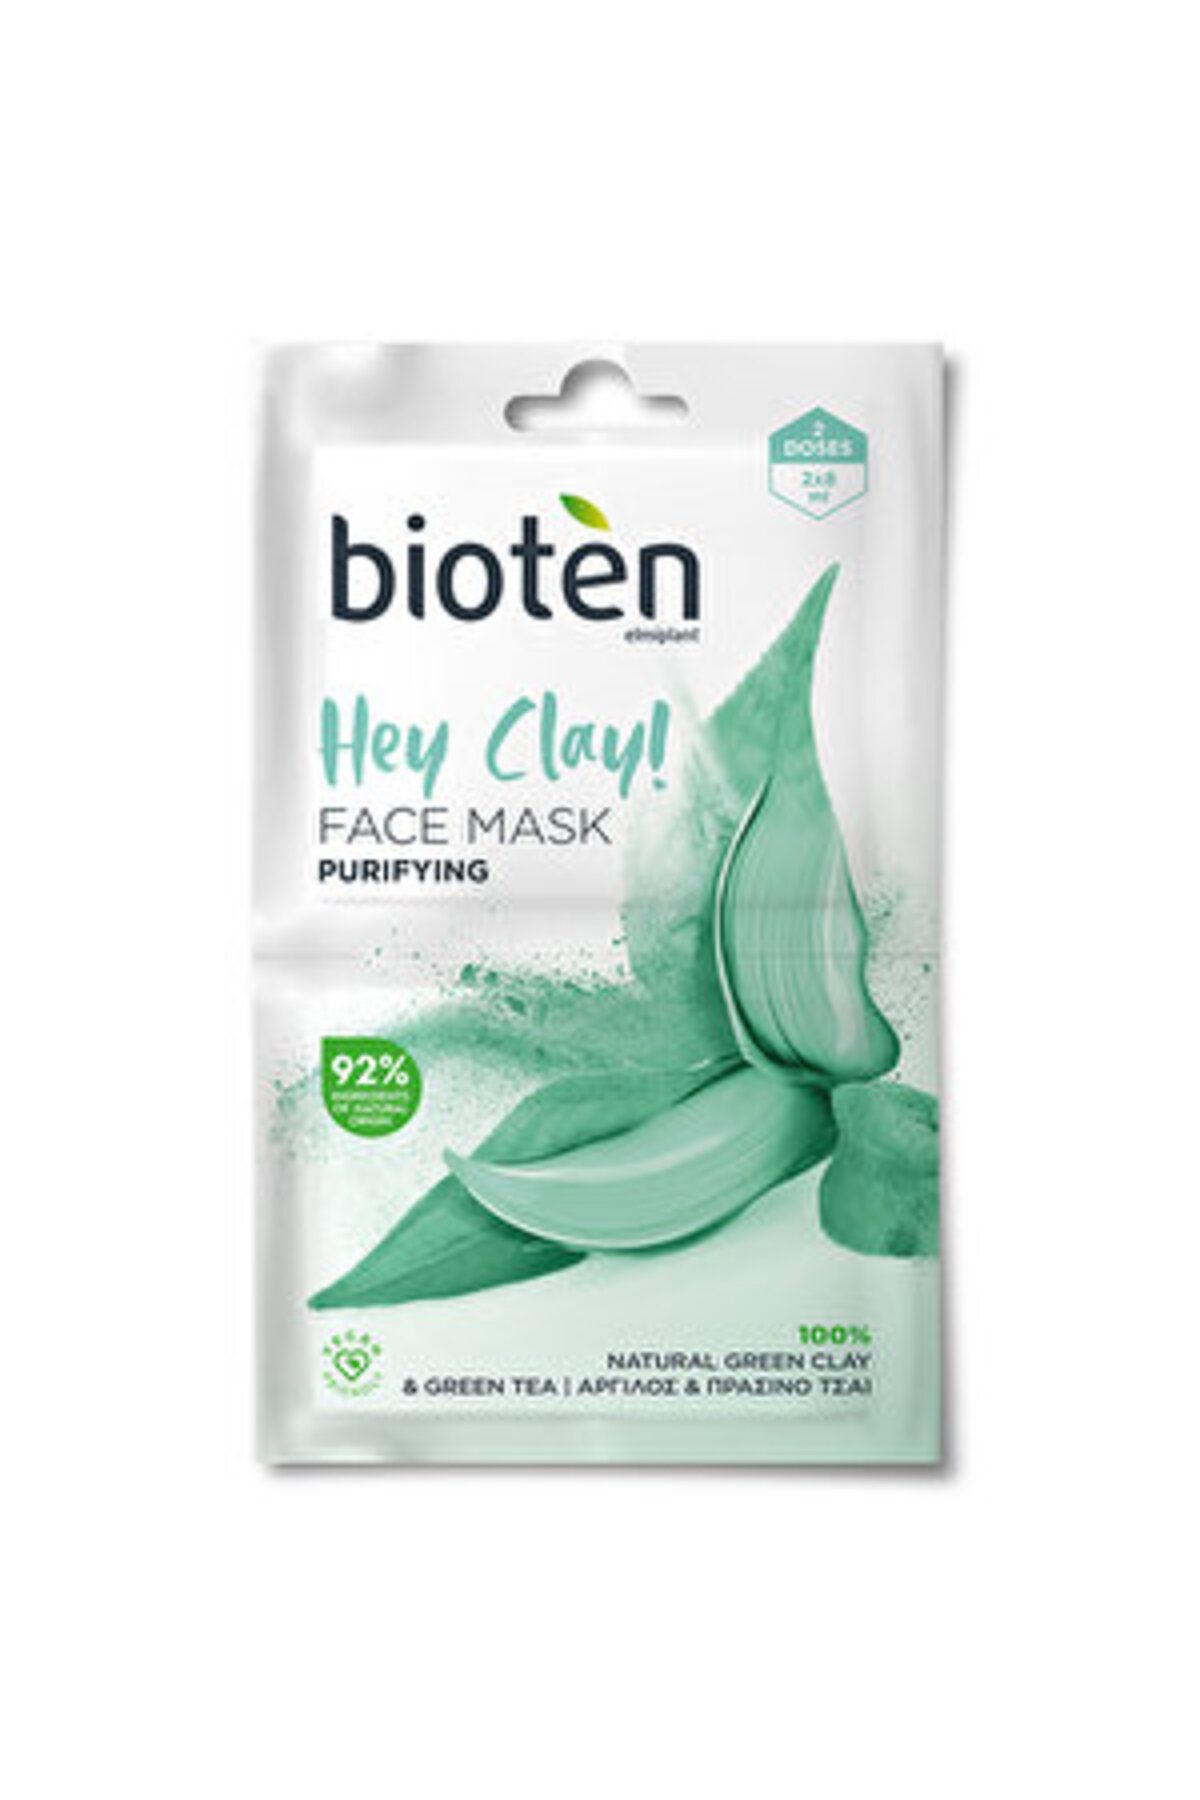 Bioten Hey Clay Arındırıcı Creamy Maske 2 x 8 ml ( 1 ADET )